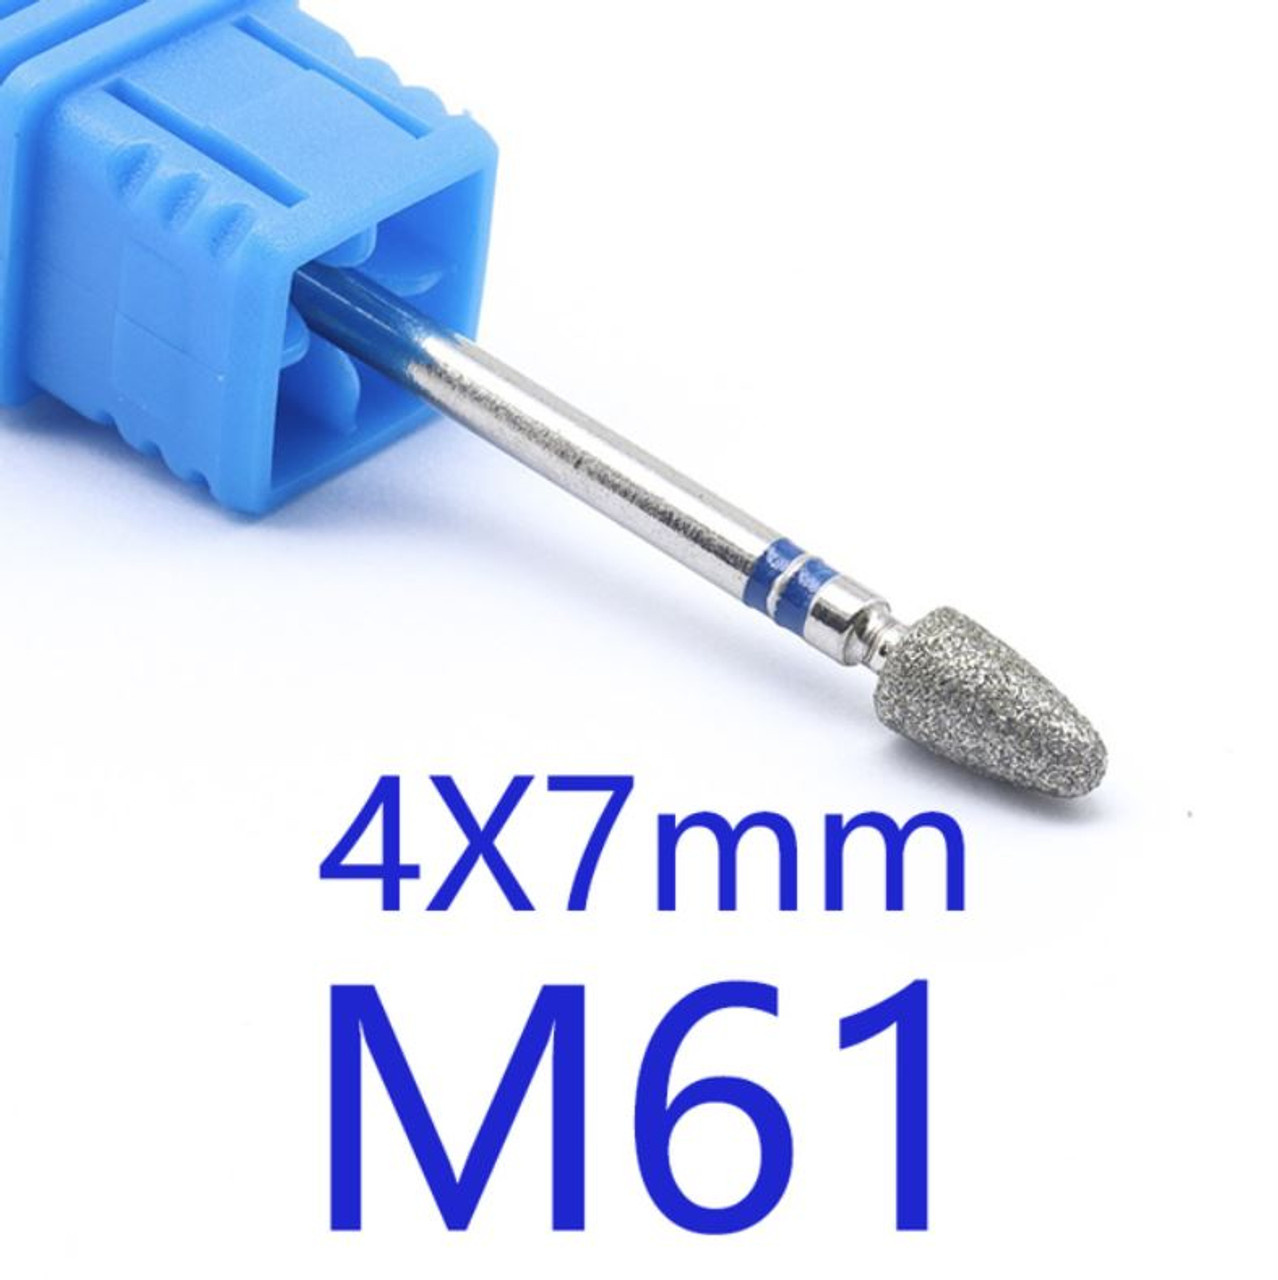 NDi beauty Diamond Drill Bit - 3/32 shank (MEDIUM) - M61